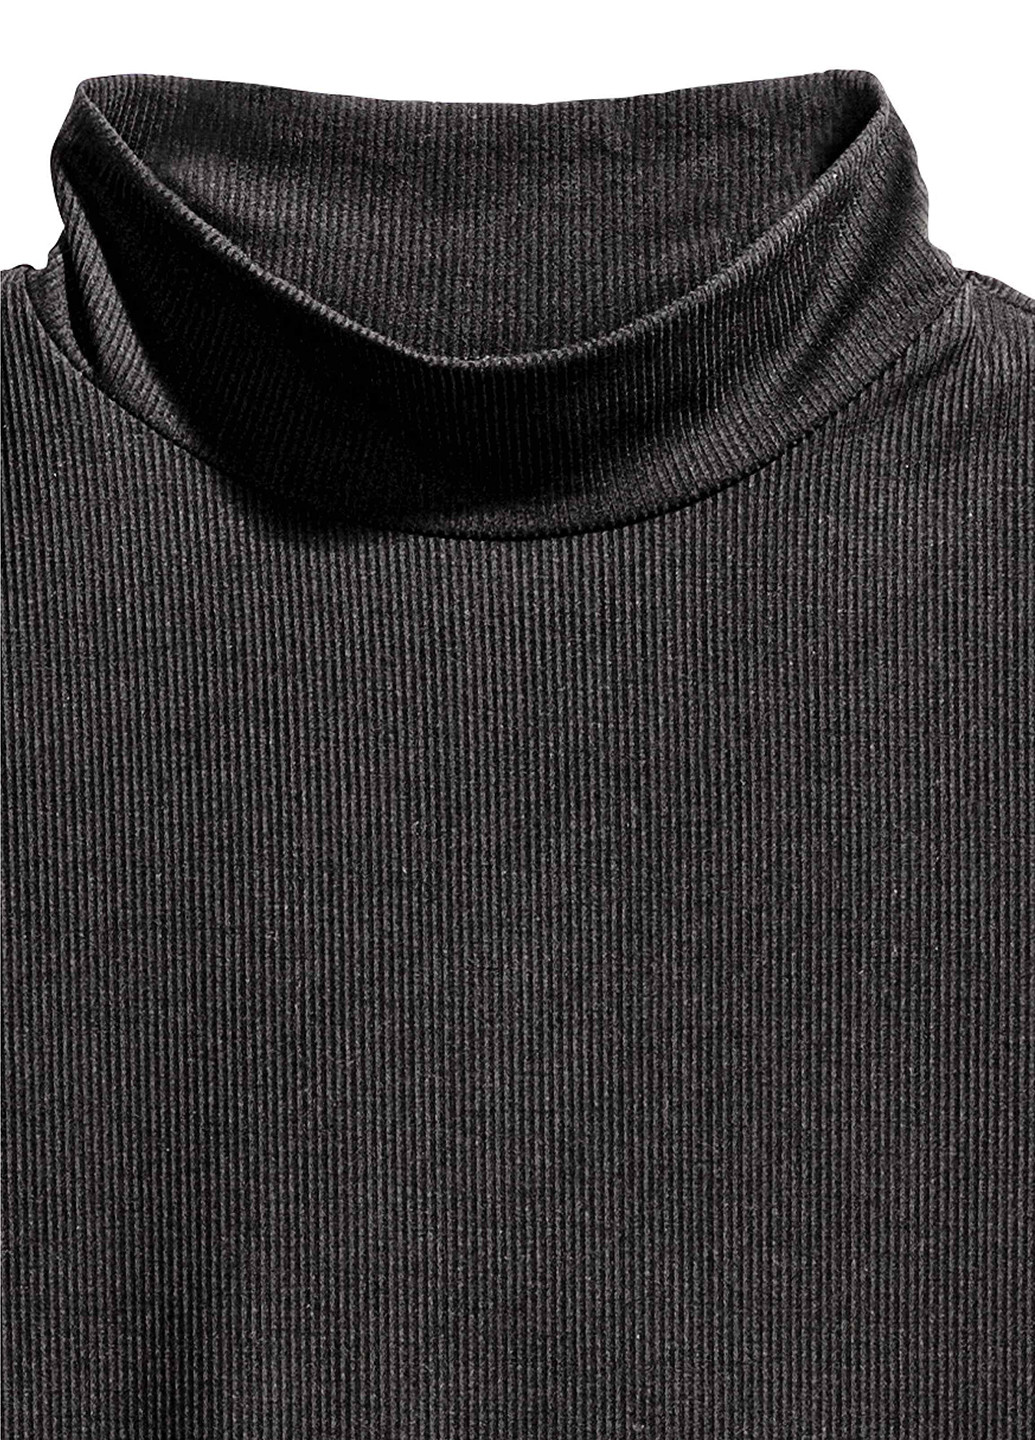 Майка H&M однотонная чёрная кэжуал вискоза, трикотаж